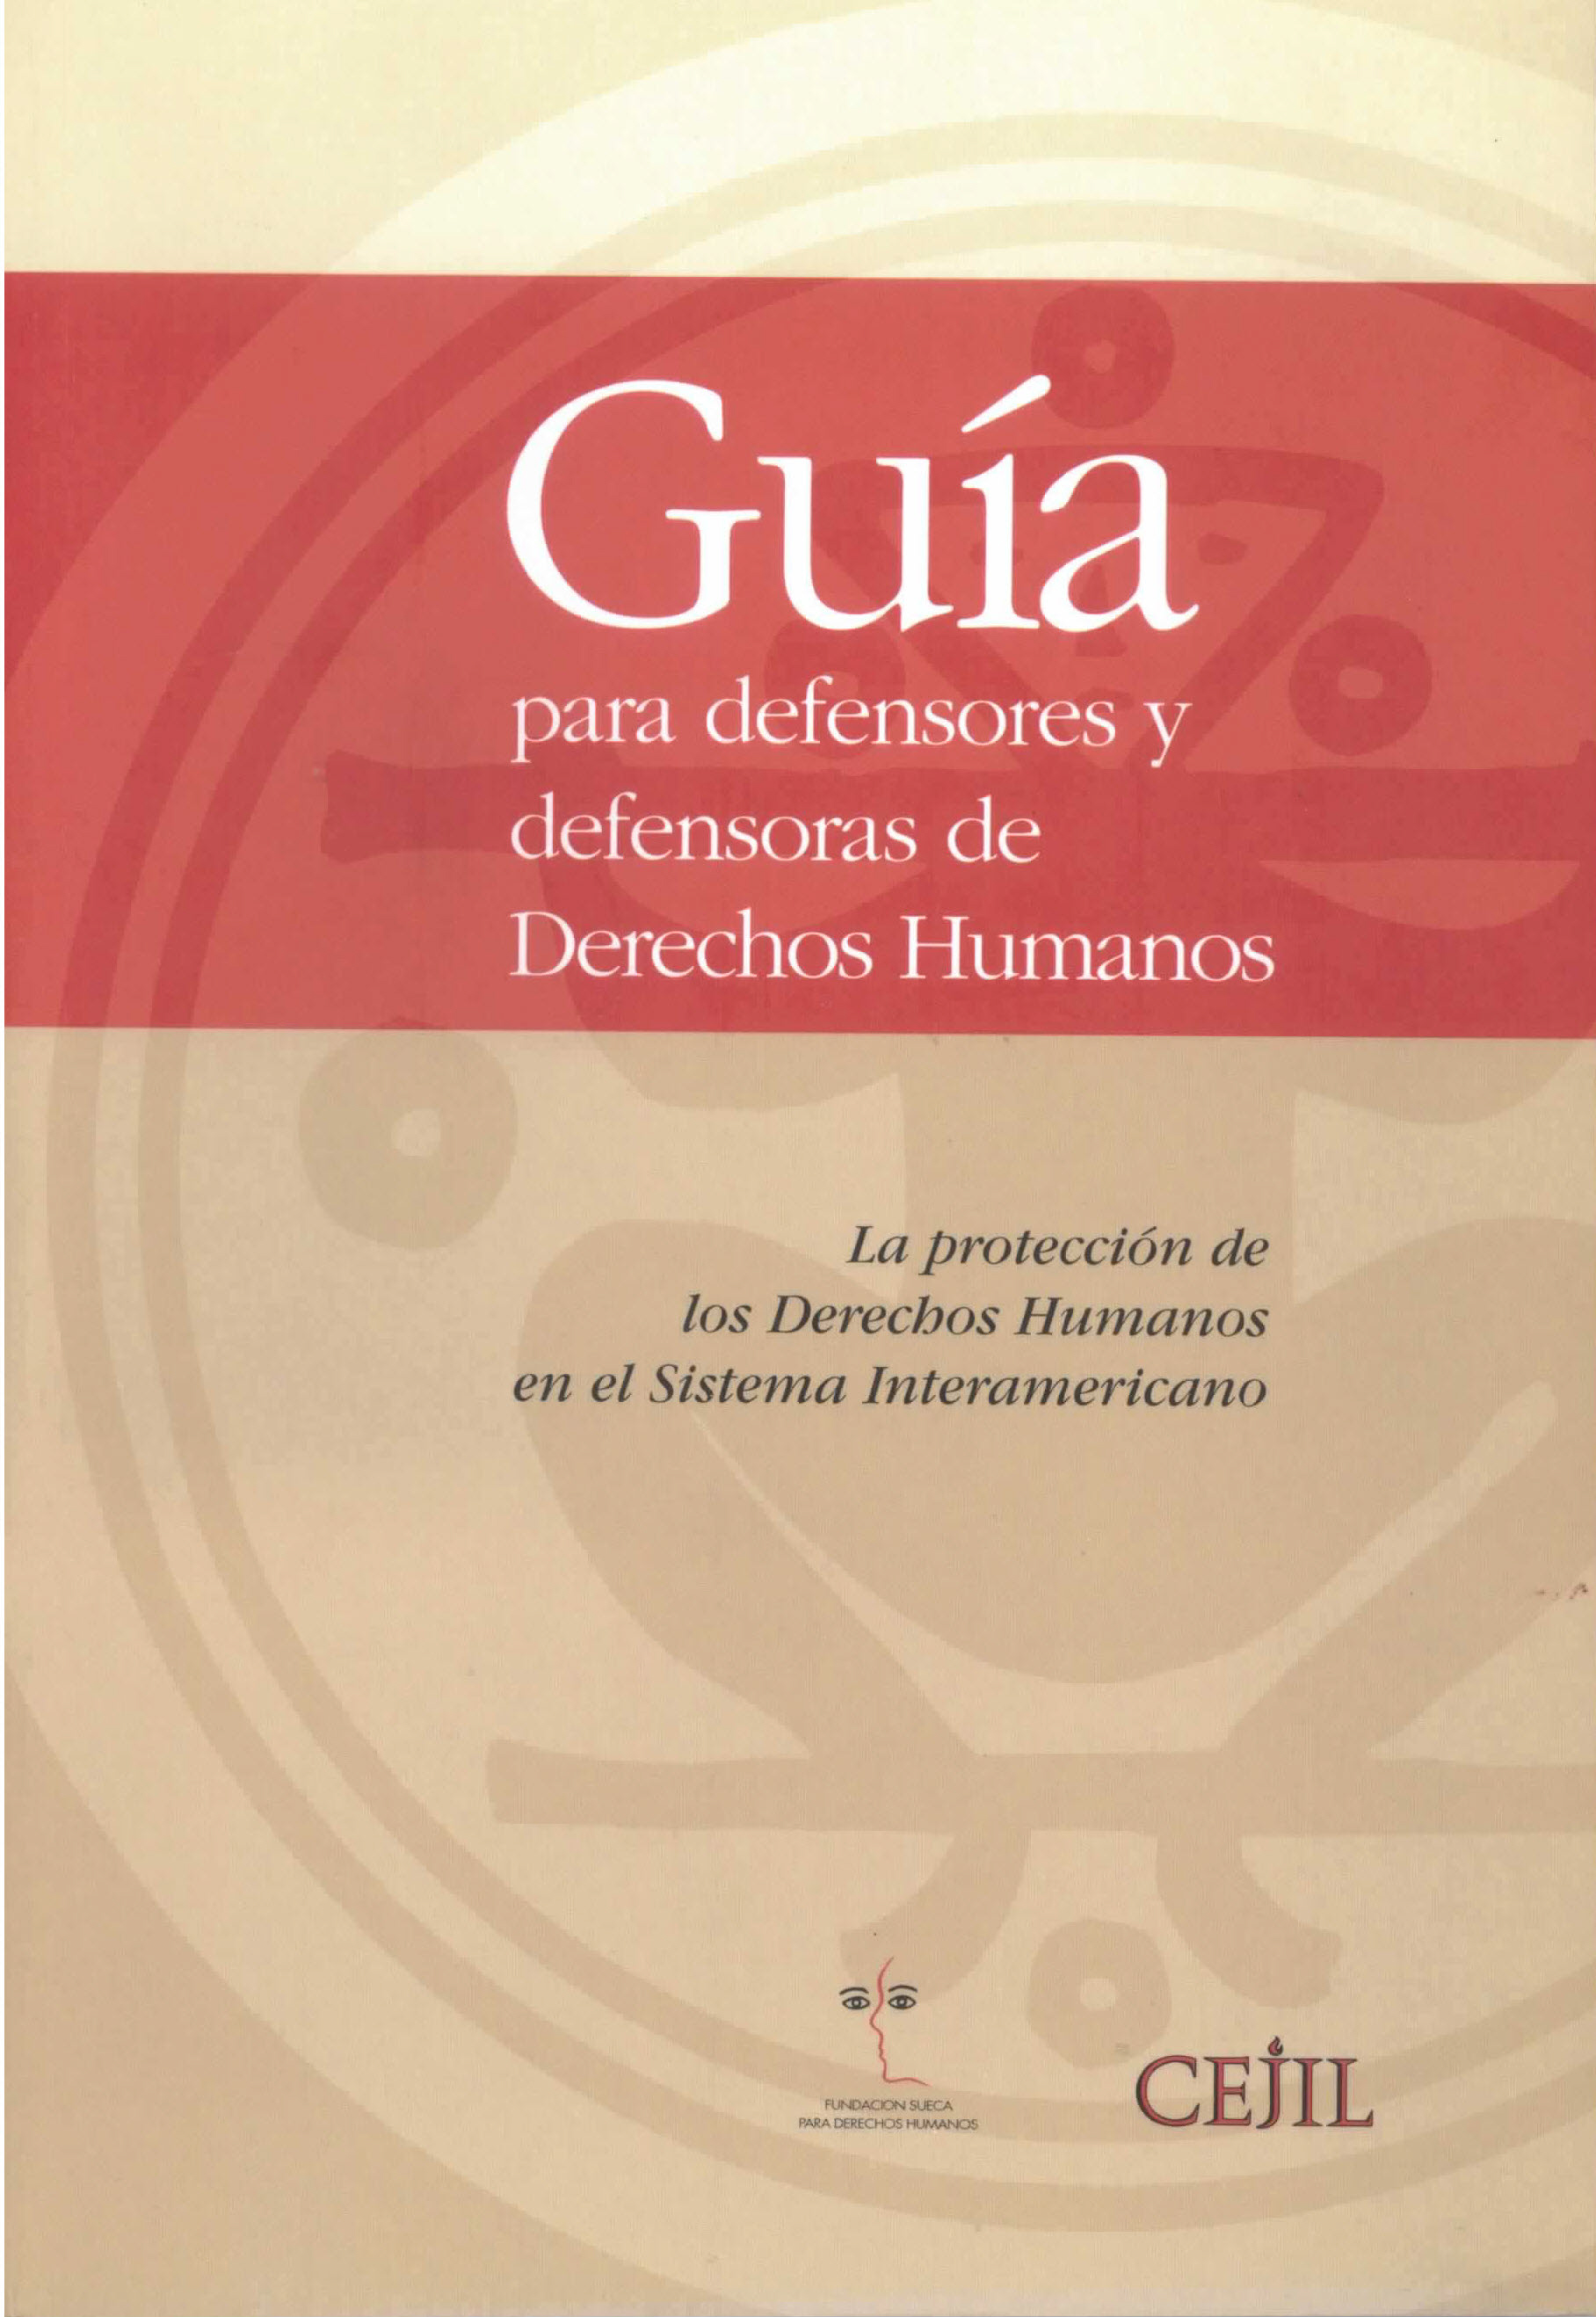 La protección de los derechos humanos en el sistema interamericano. Guía para defensores y defensoras de derechos humanos